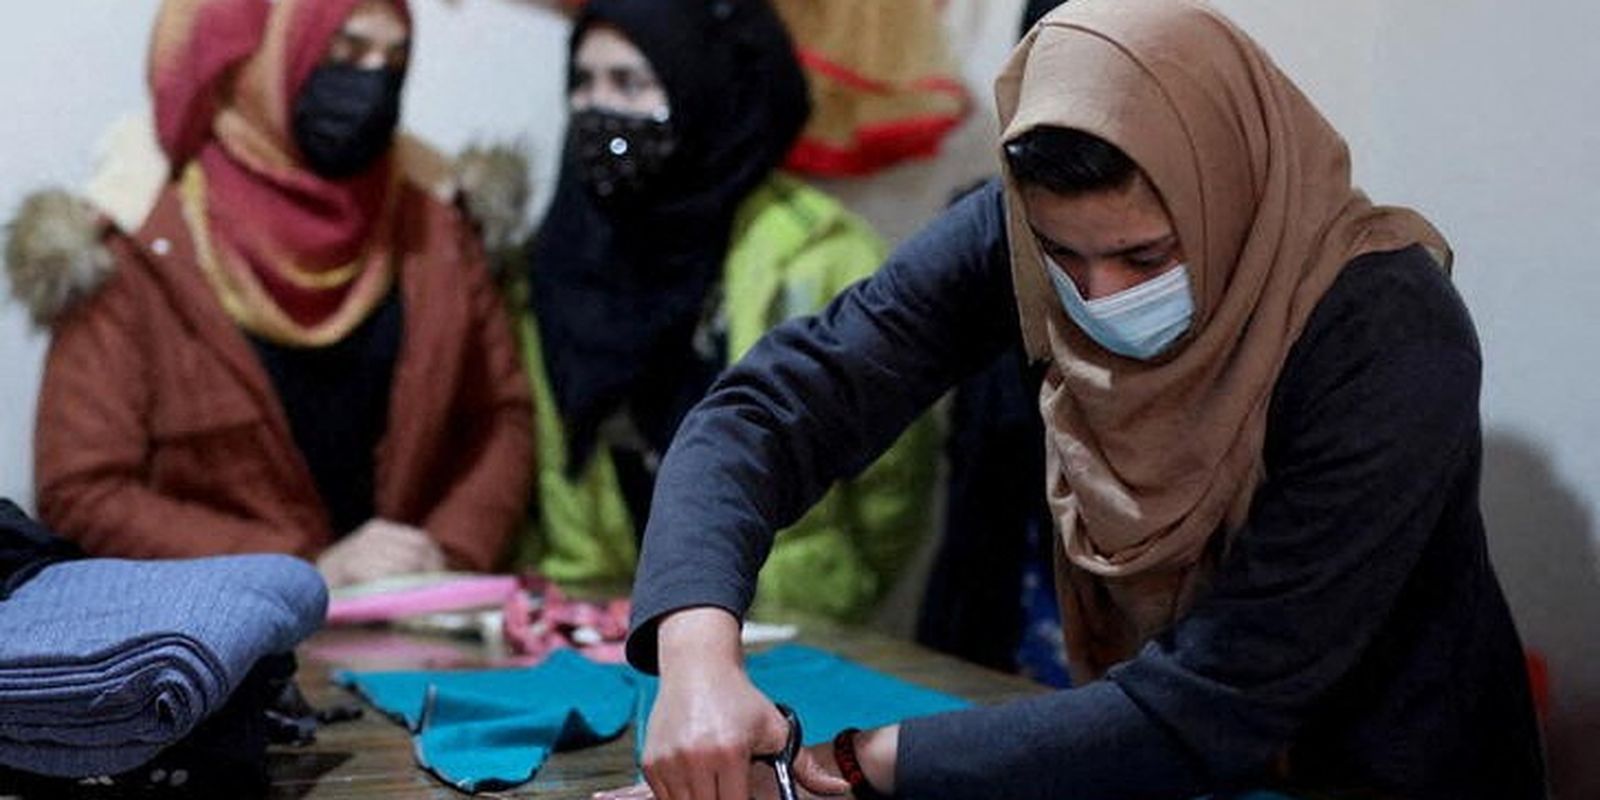 Mulheres afegãs em oficina de costura em Cabul